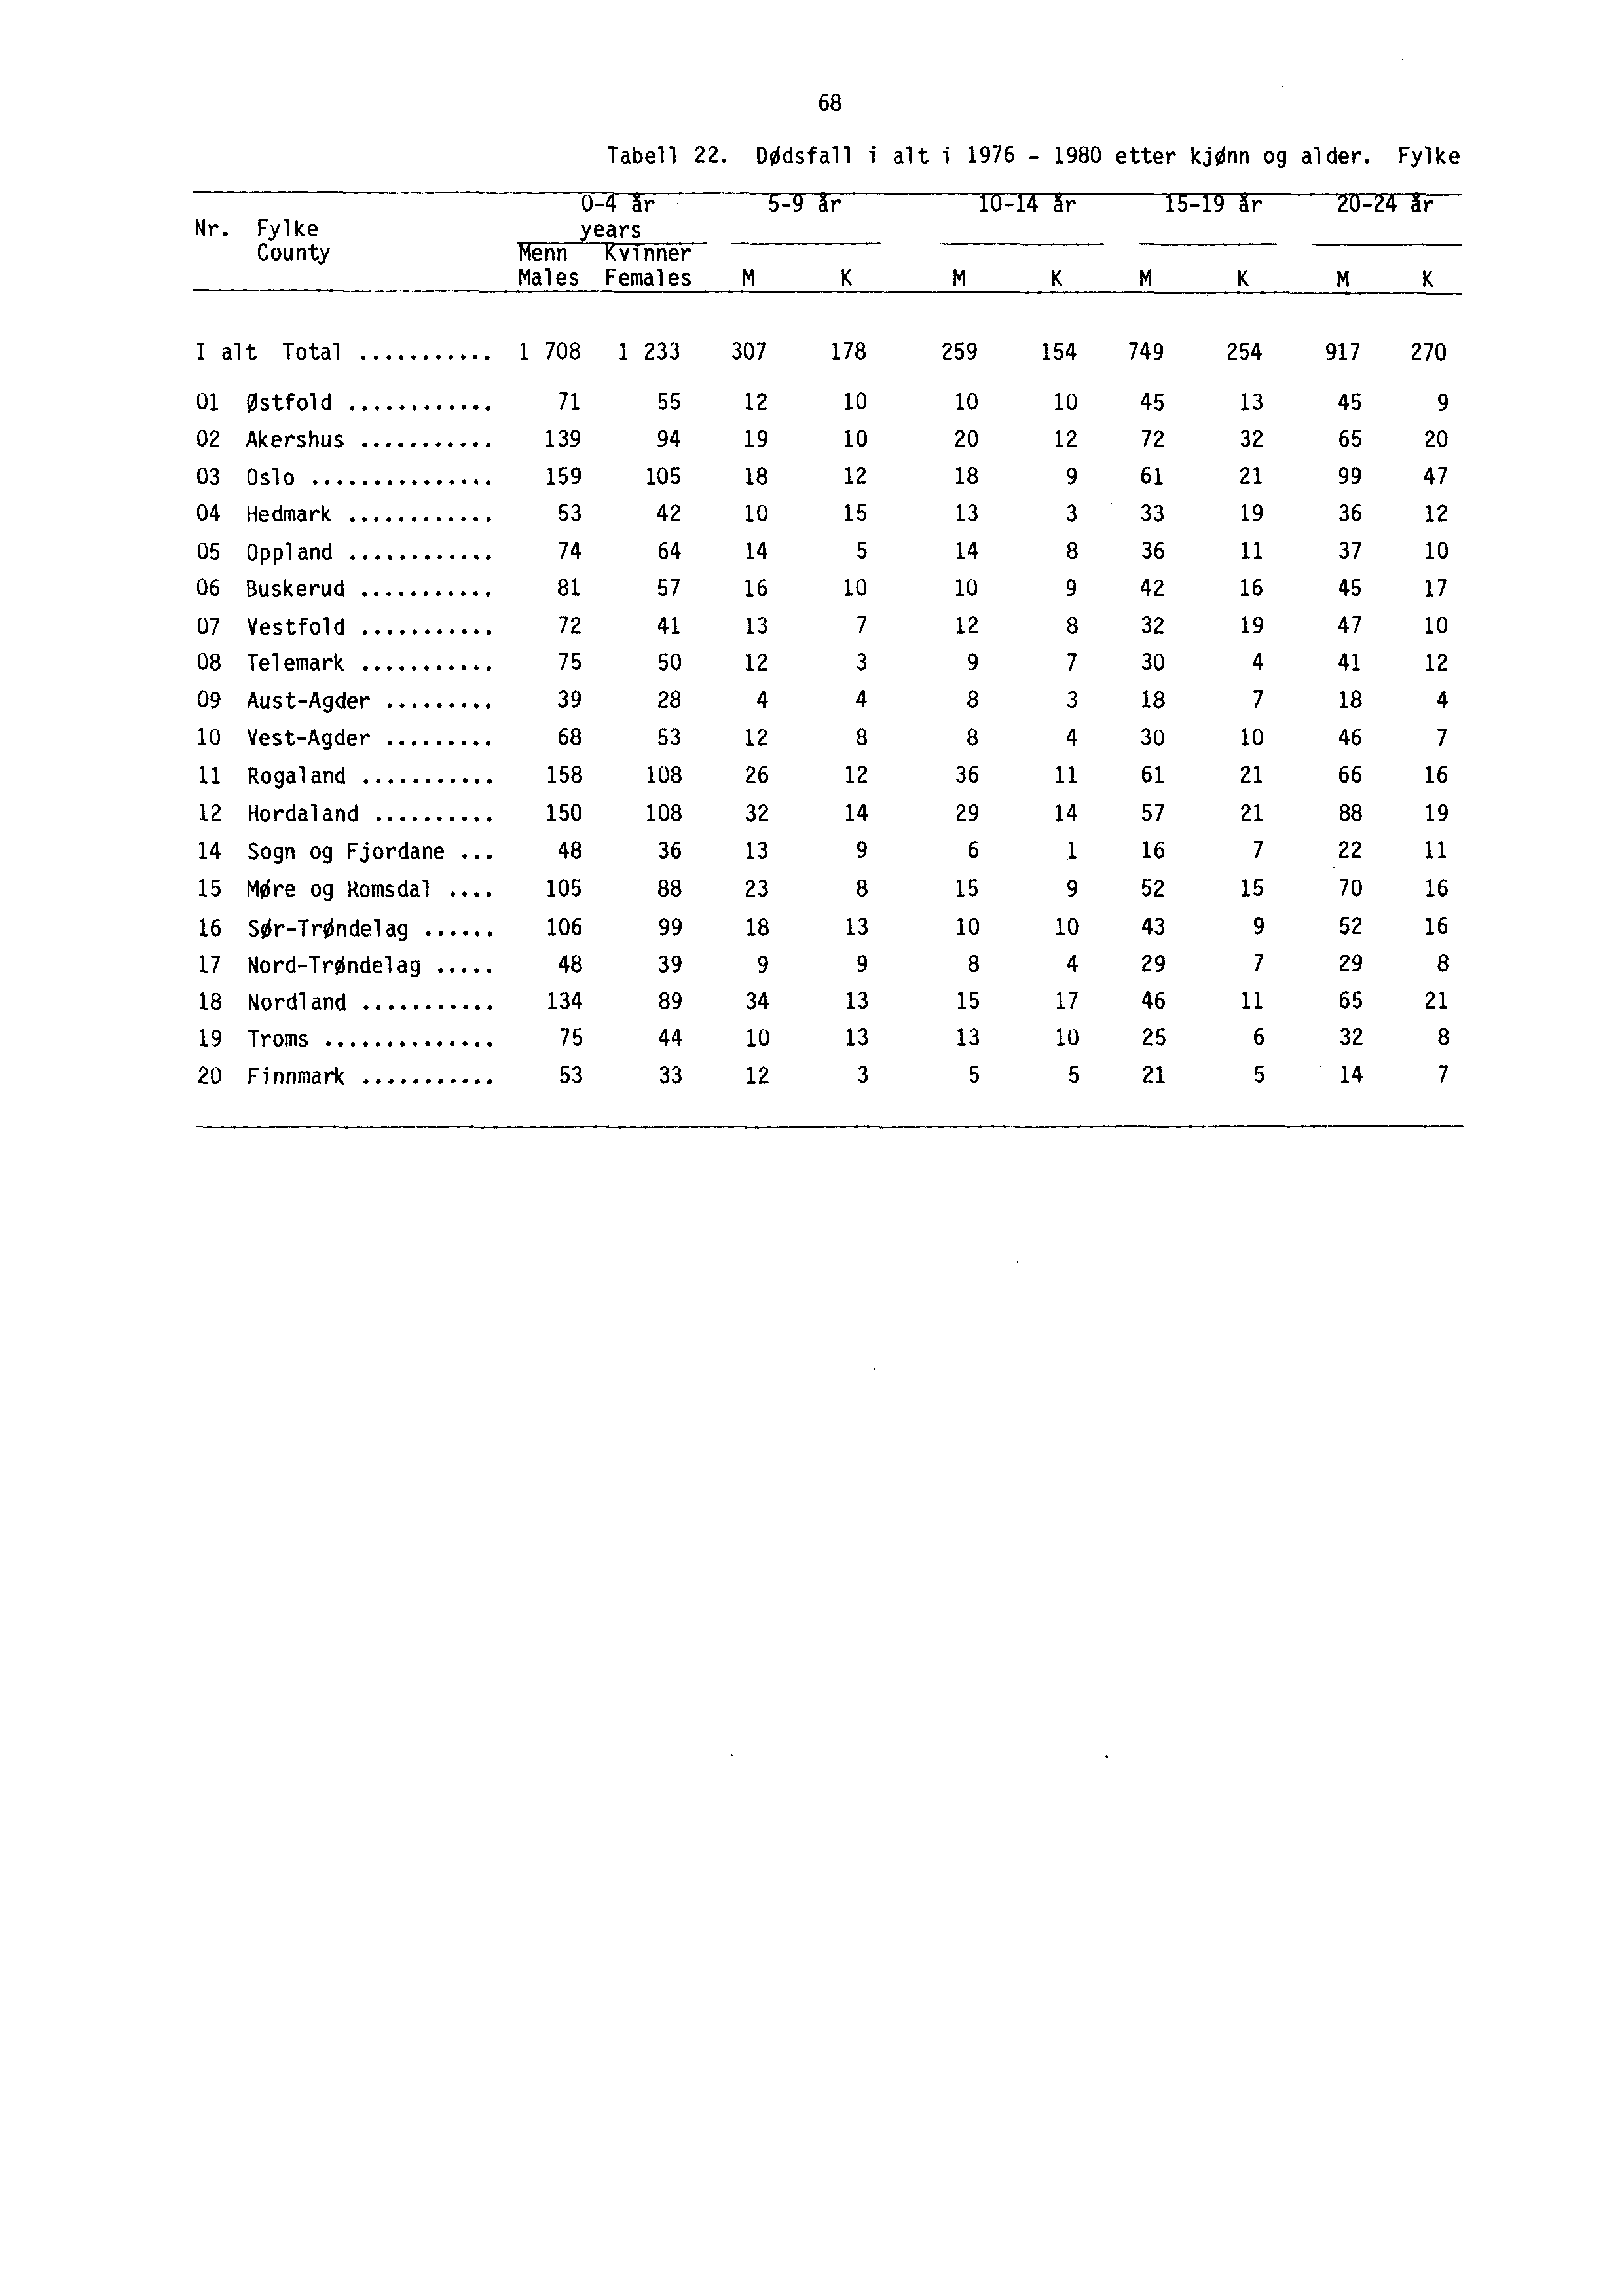 68 Nr. Fylke County Tabell 22. DOdsfall i alt i 1976-1980 etter kjønn og alder.